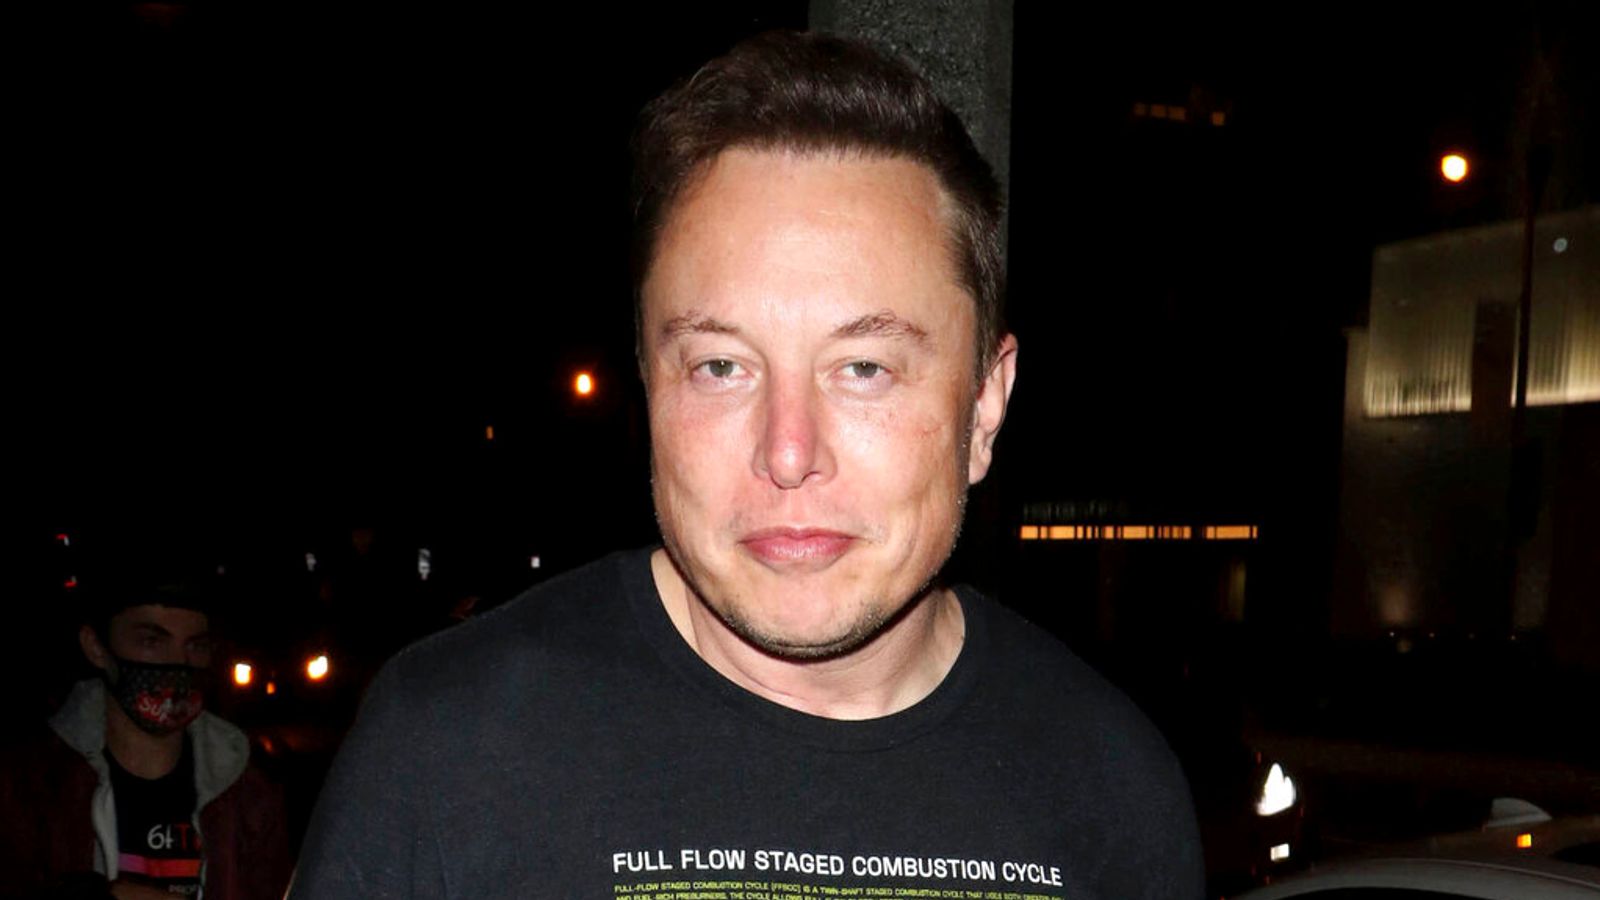 Elon Musk overtaken as world's richest person by LVMH chairman Bernard Arnault